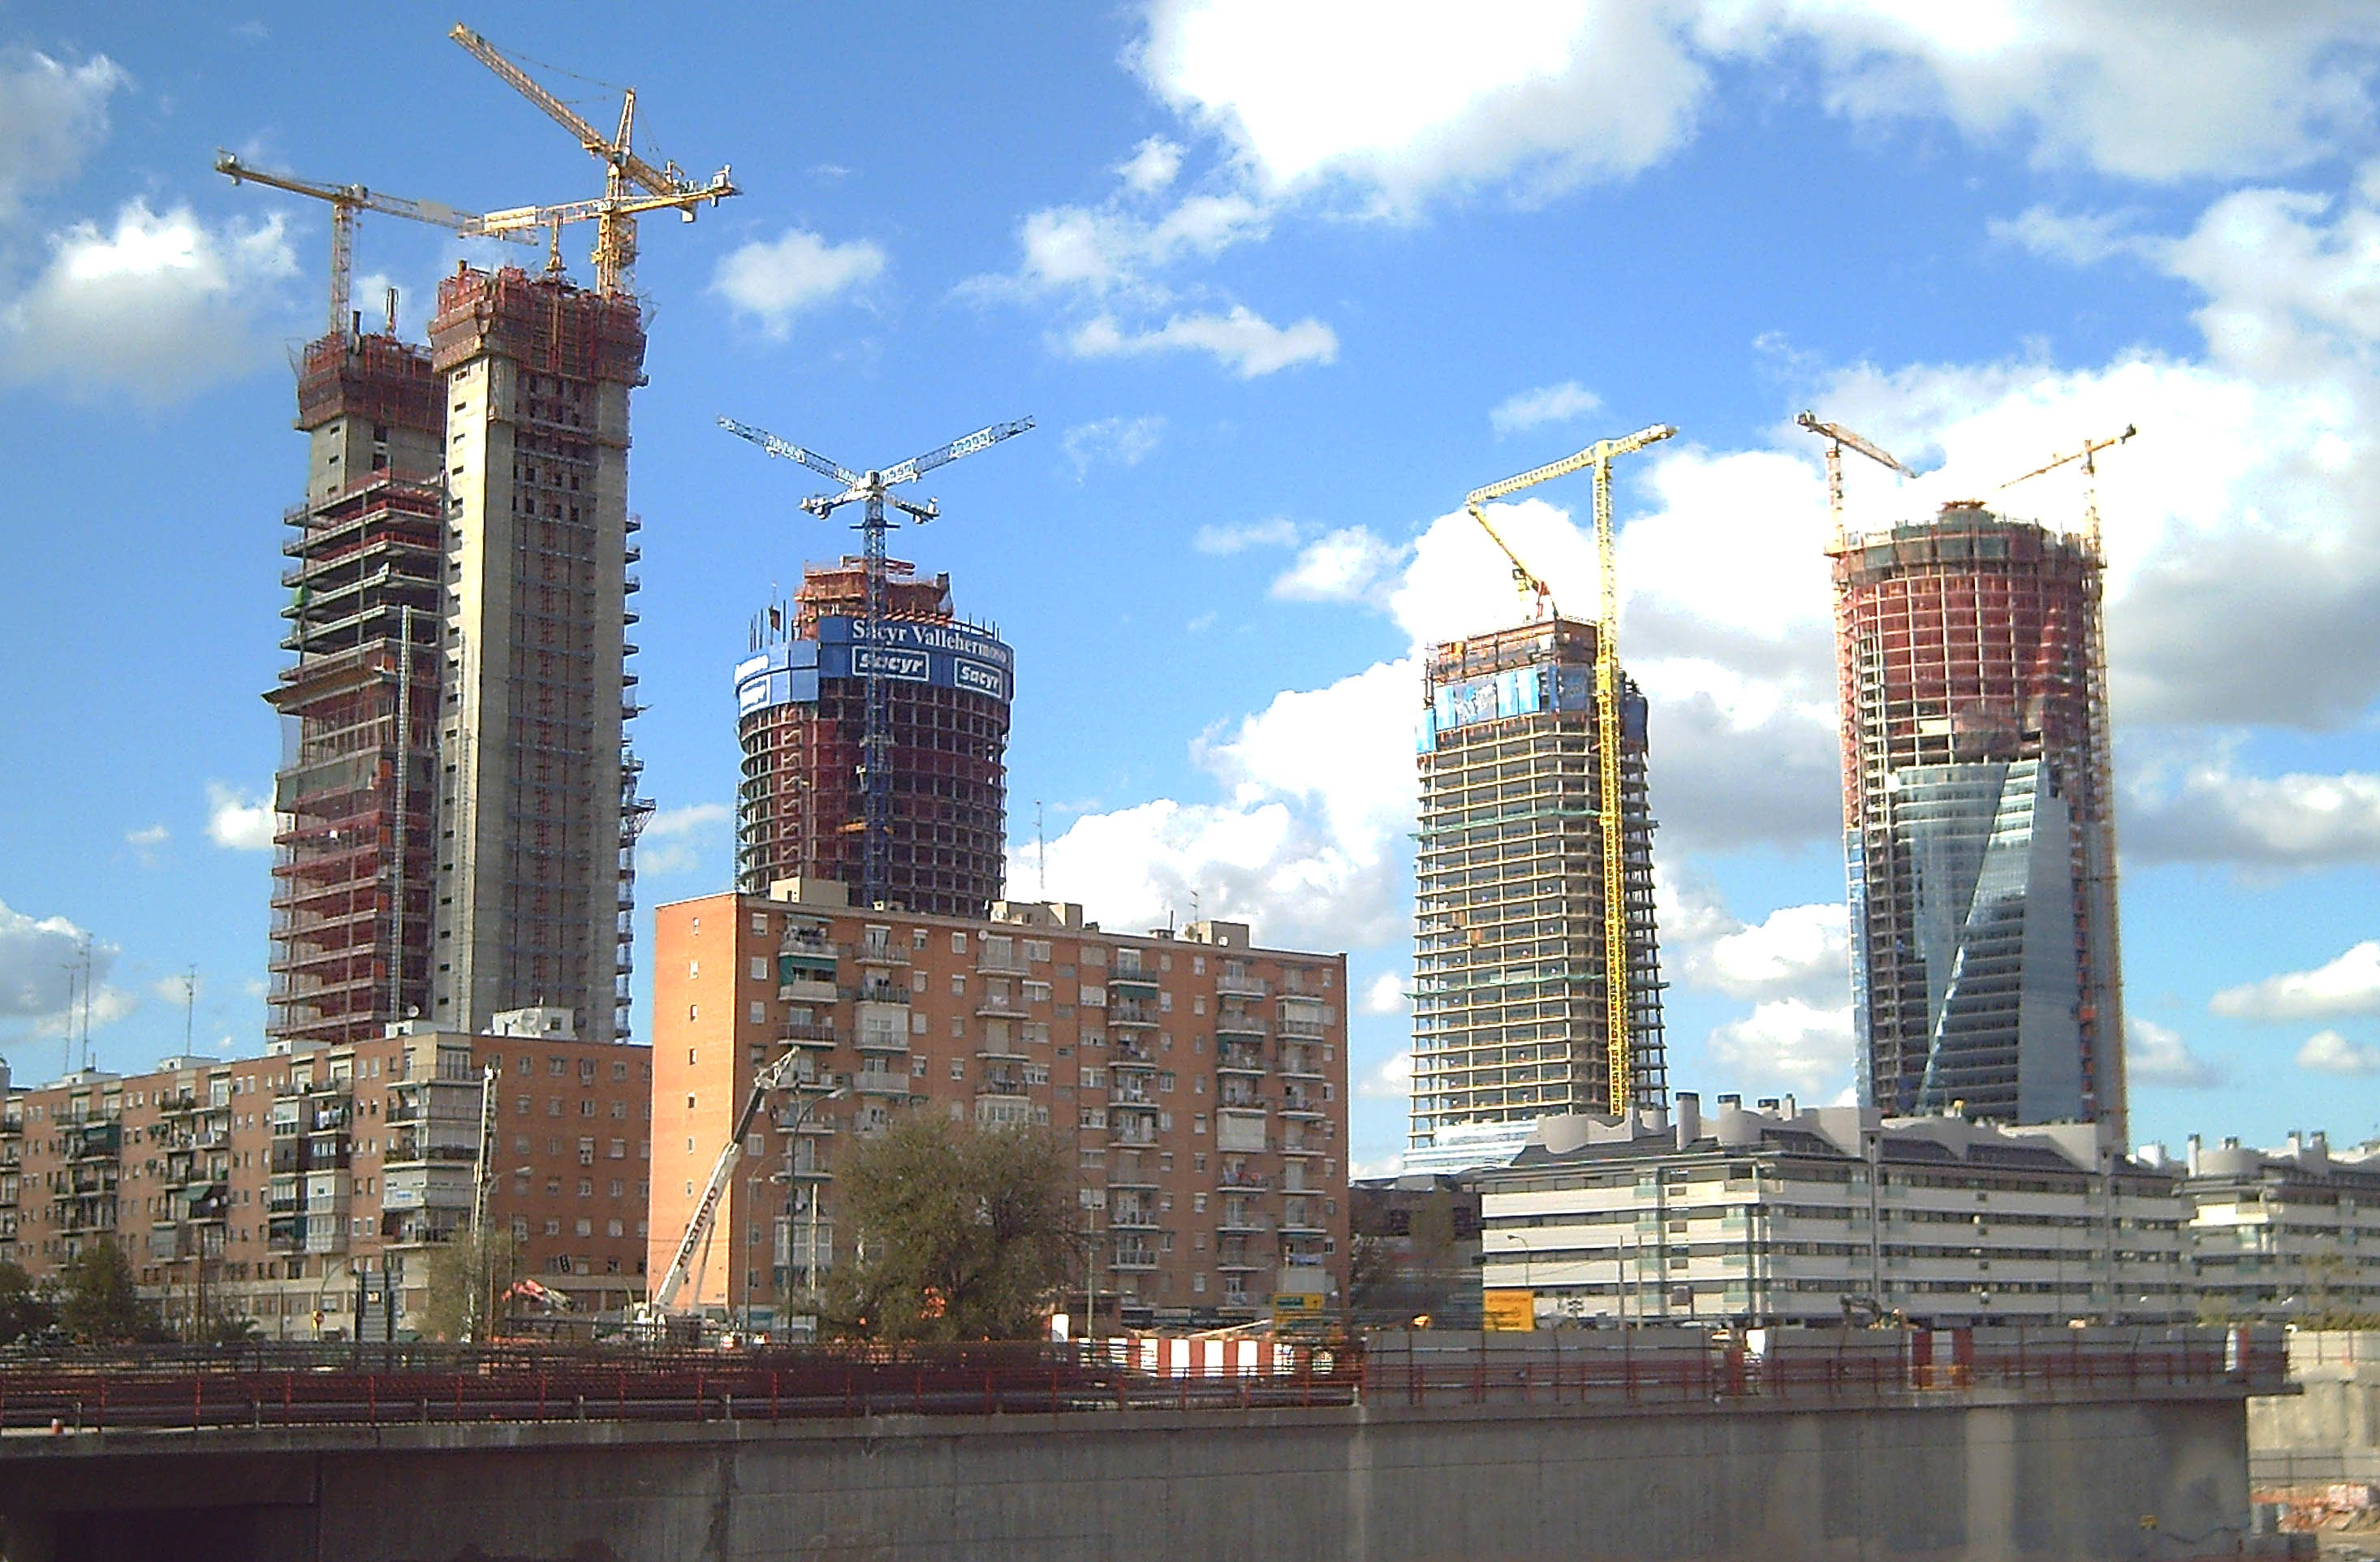 Vista del complejo empresarial Cuatro Torres Business Area (CTBA) en construcción desde la estación ferroviaria de Chamartín, en Madrid (España).